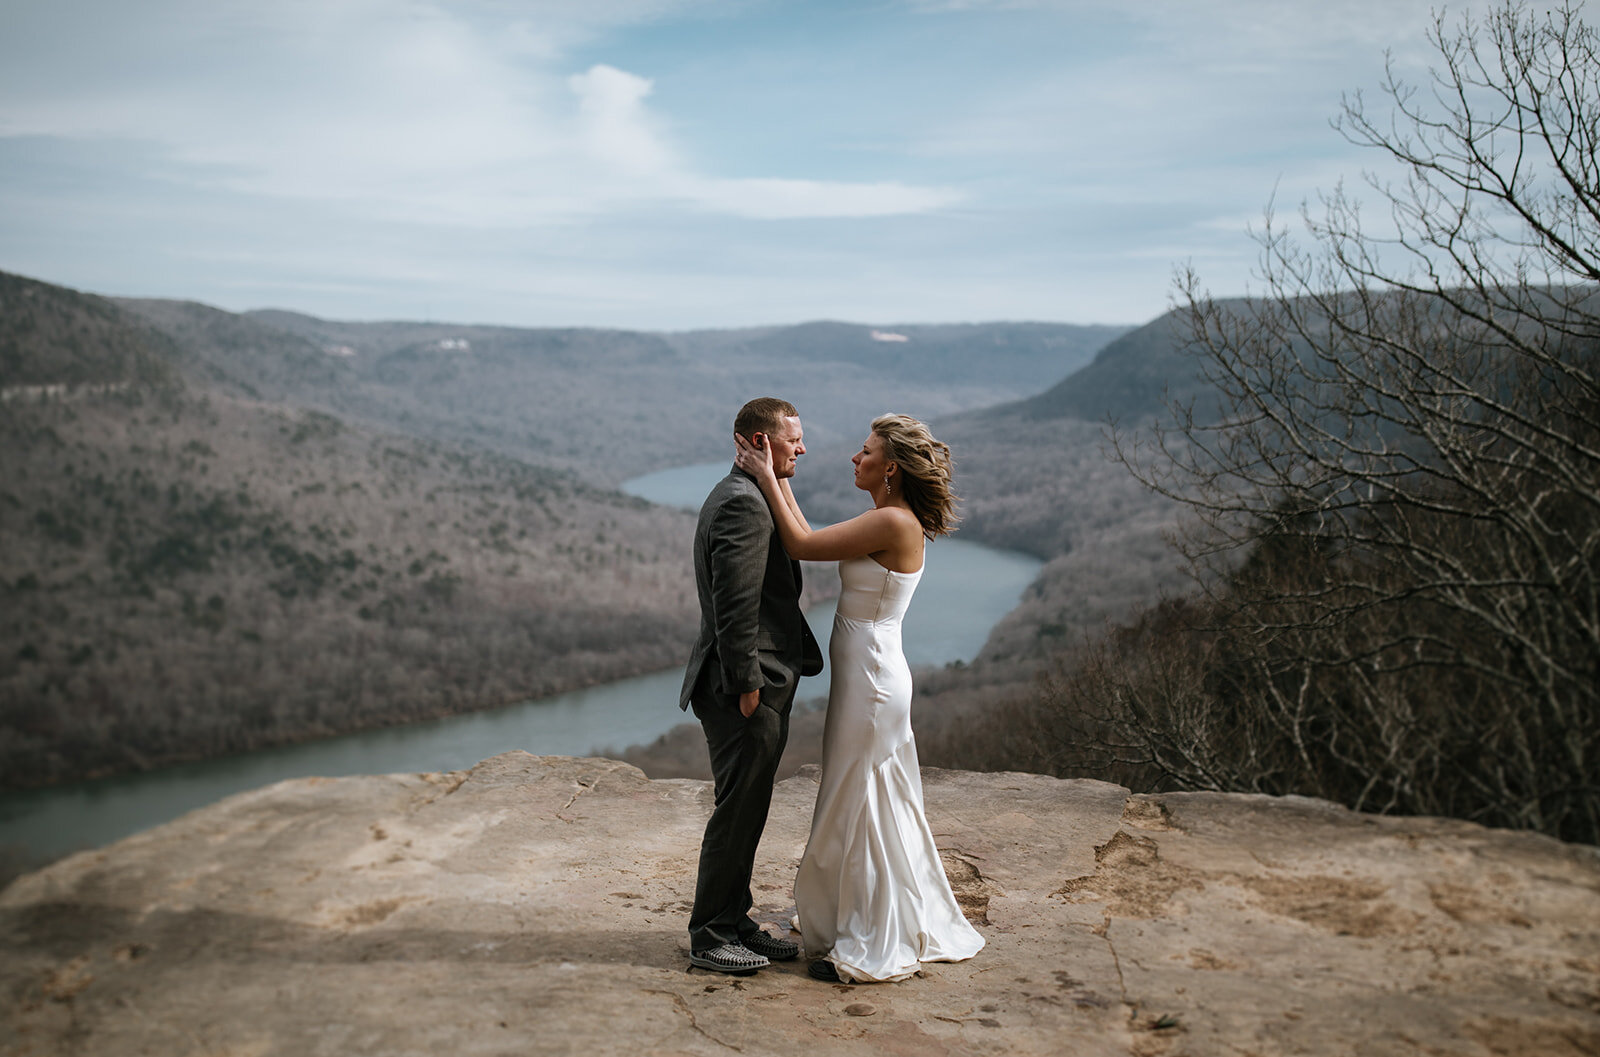 snoopers-rock-adventure-elopement-chattanooga-wedding-photographerfoster-falls-elopement-chattanooga-wedding-photographer-471_websize.jpg